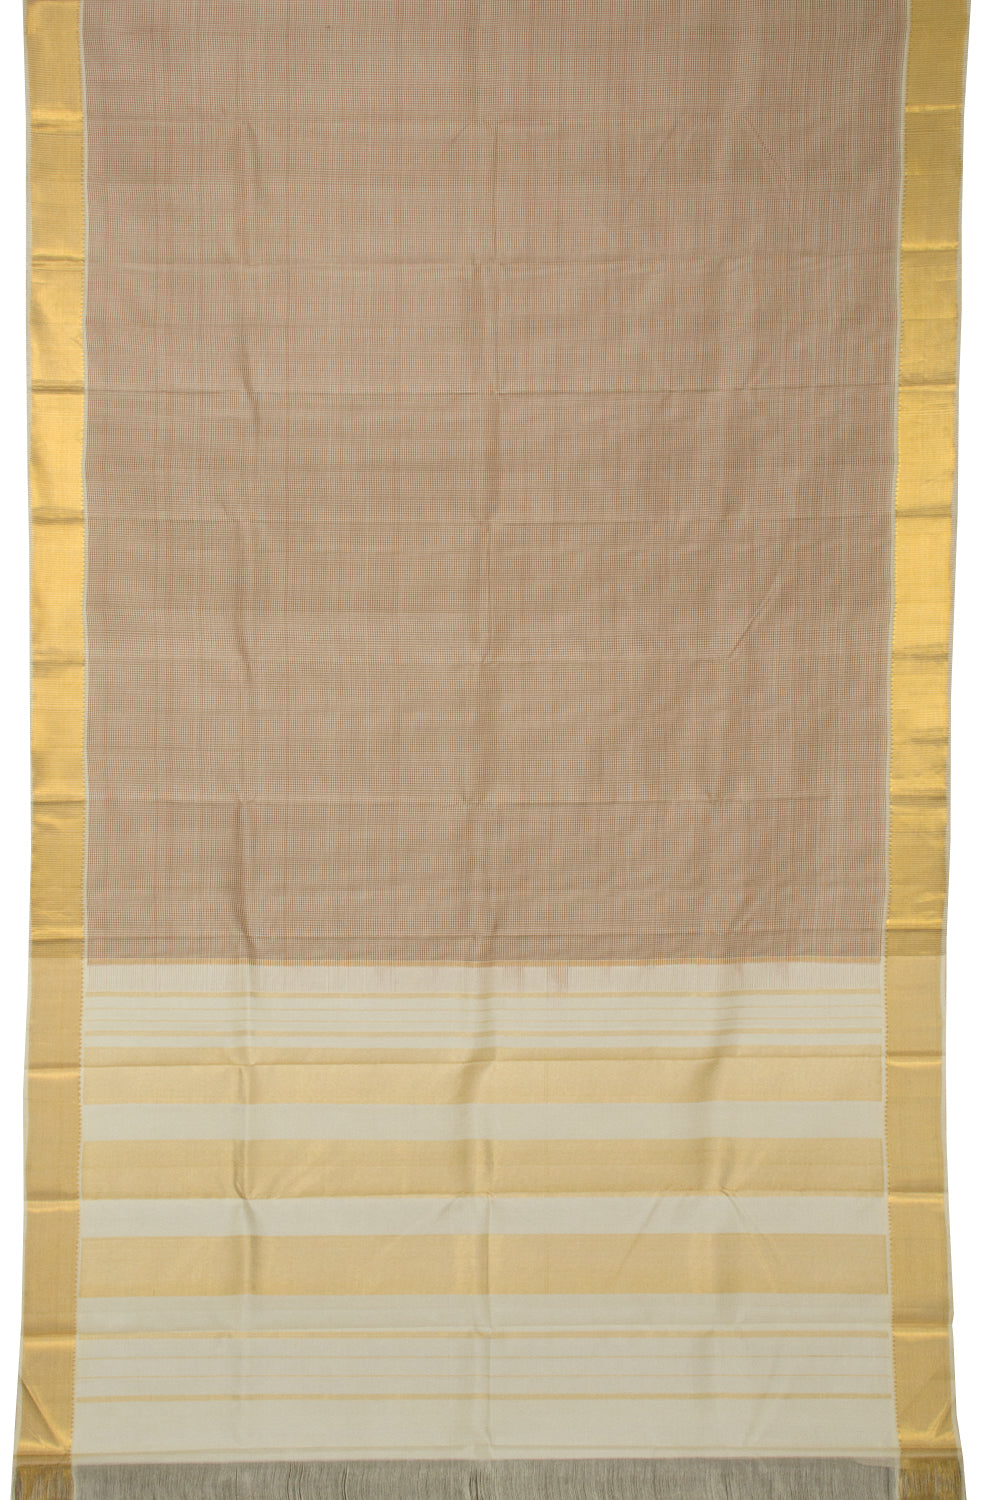 Brown Handloom Kanjivaram Silk Saree - Avishya